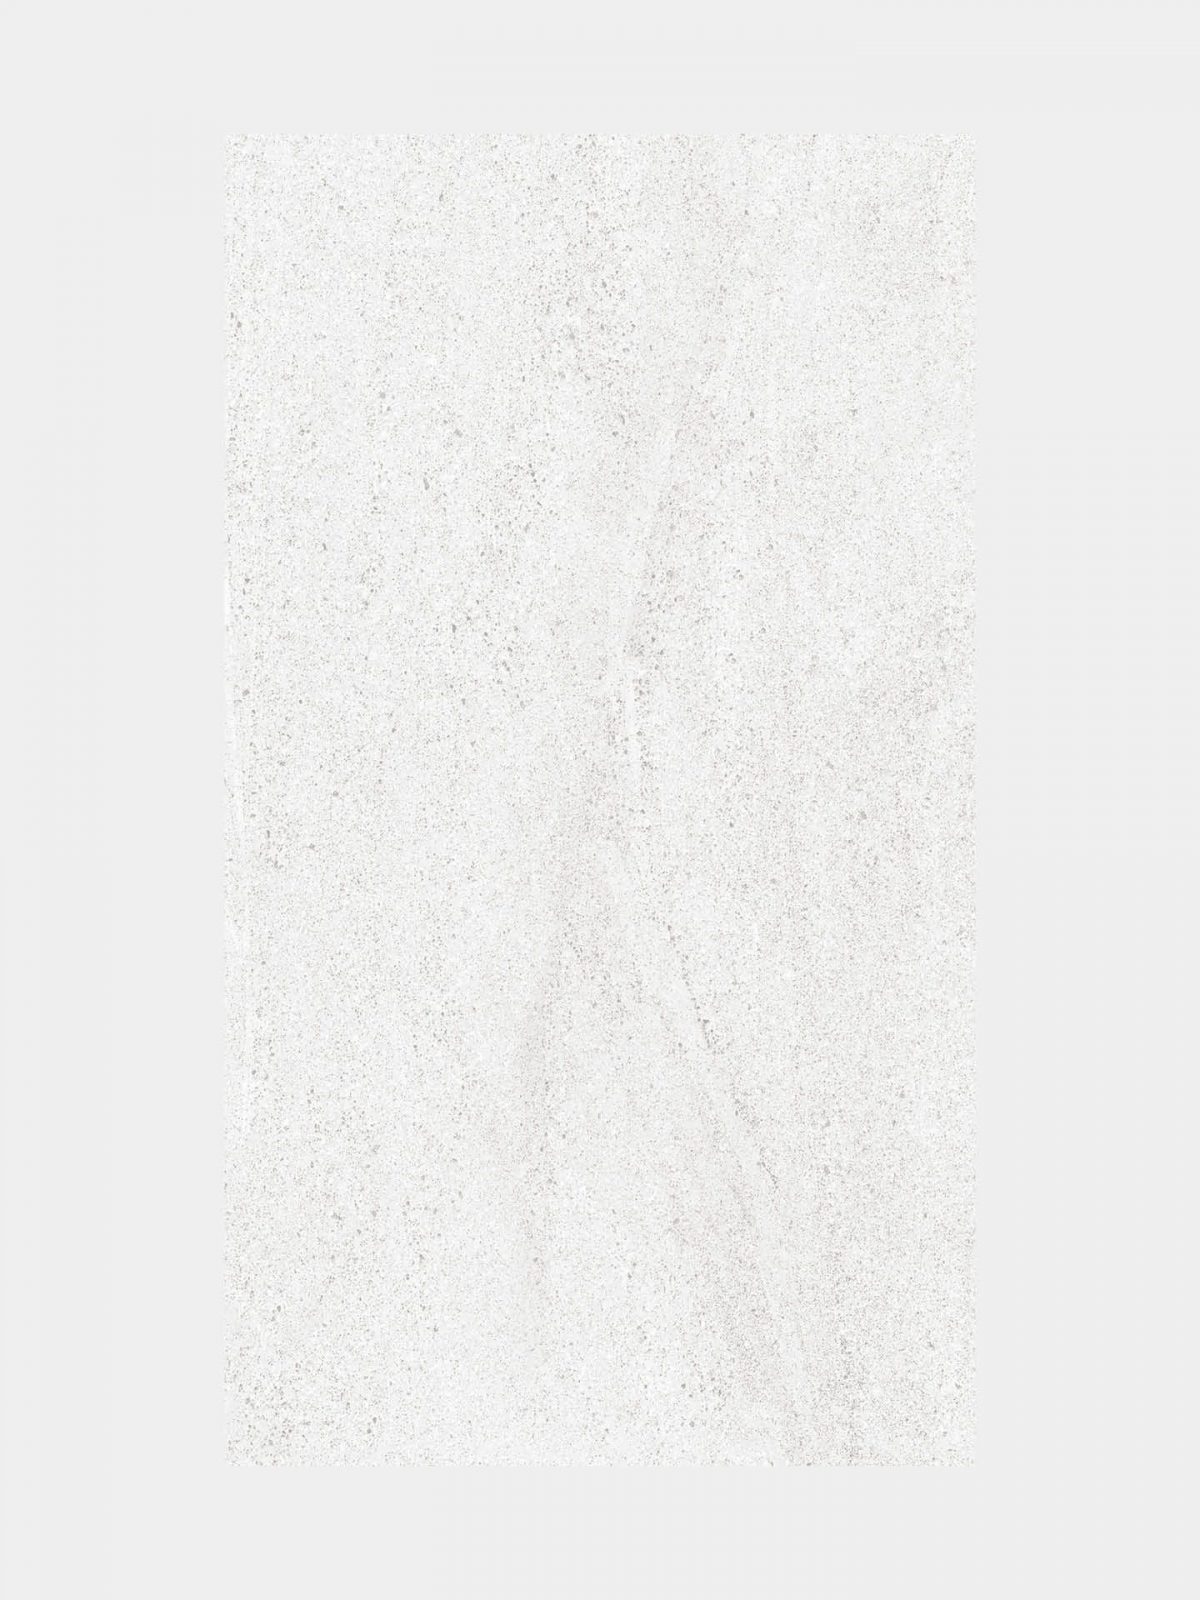 porcelanosa madagascar blanco 25x44.4cm